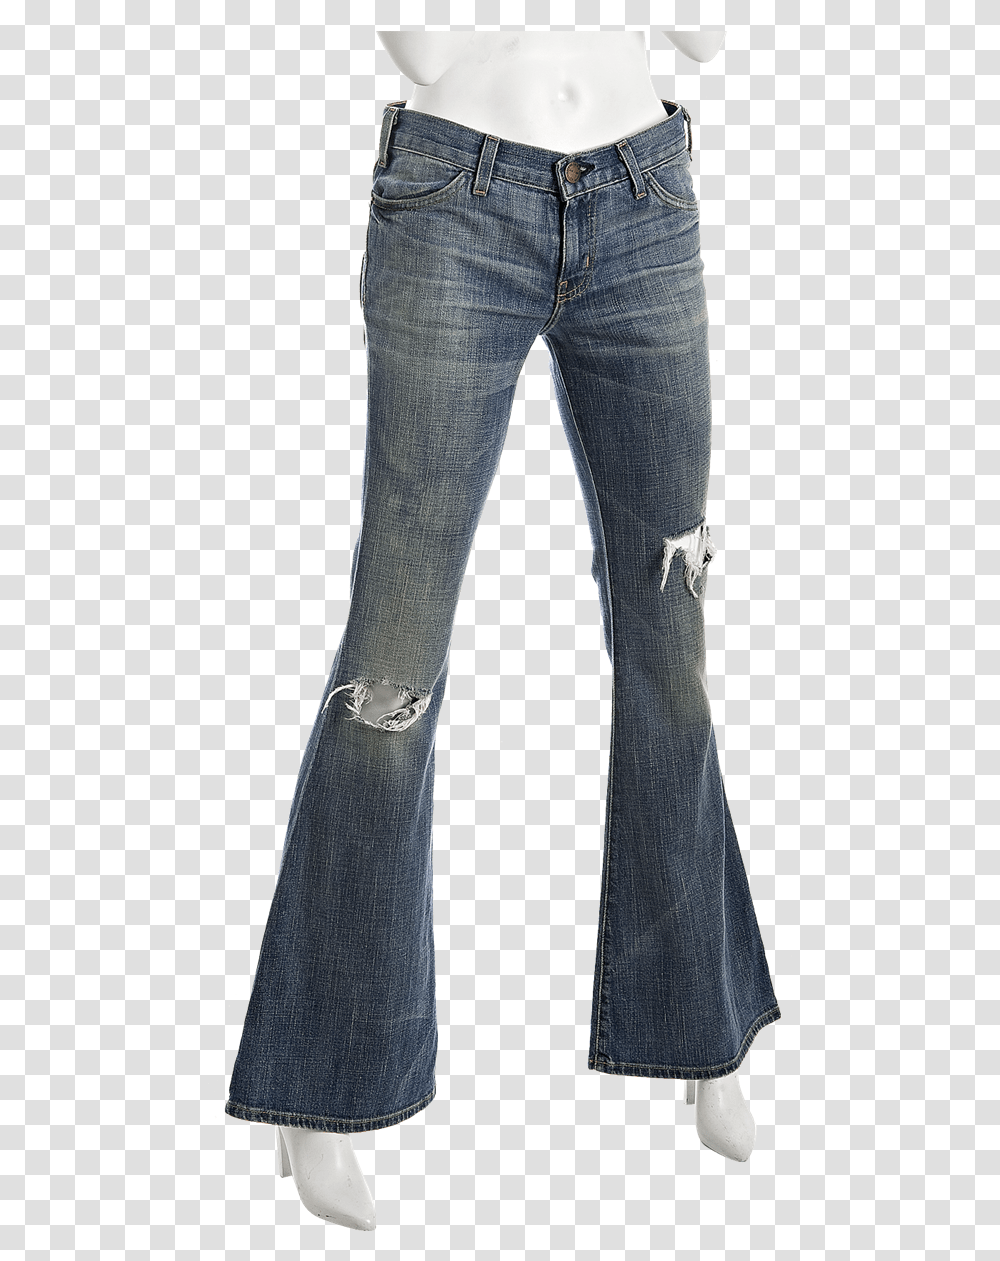 Bell Bottom Jeans Pocket, Pants, Apparel, Denim Transparent Png